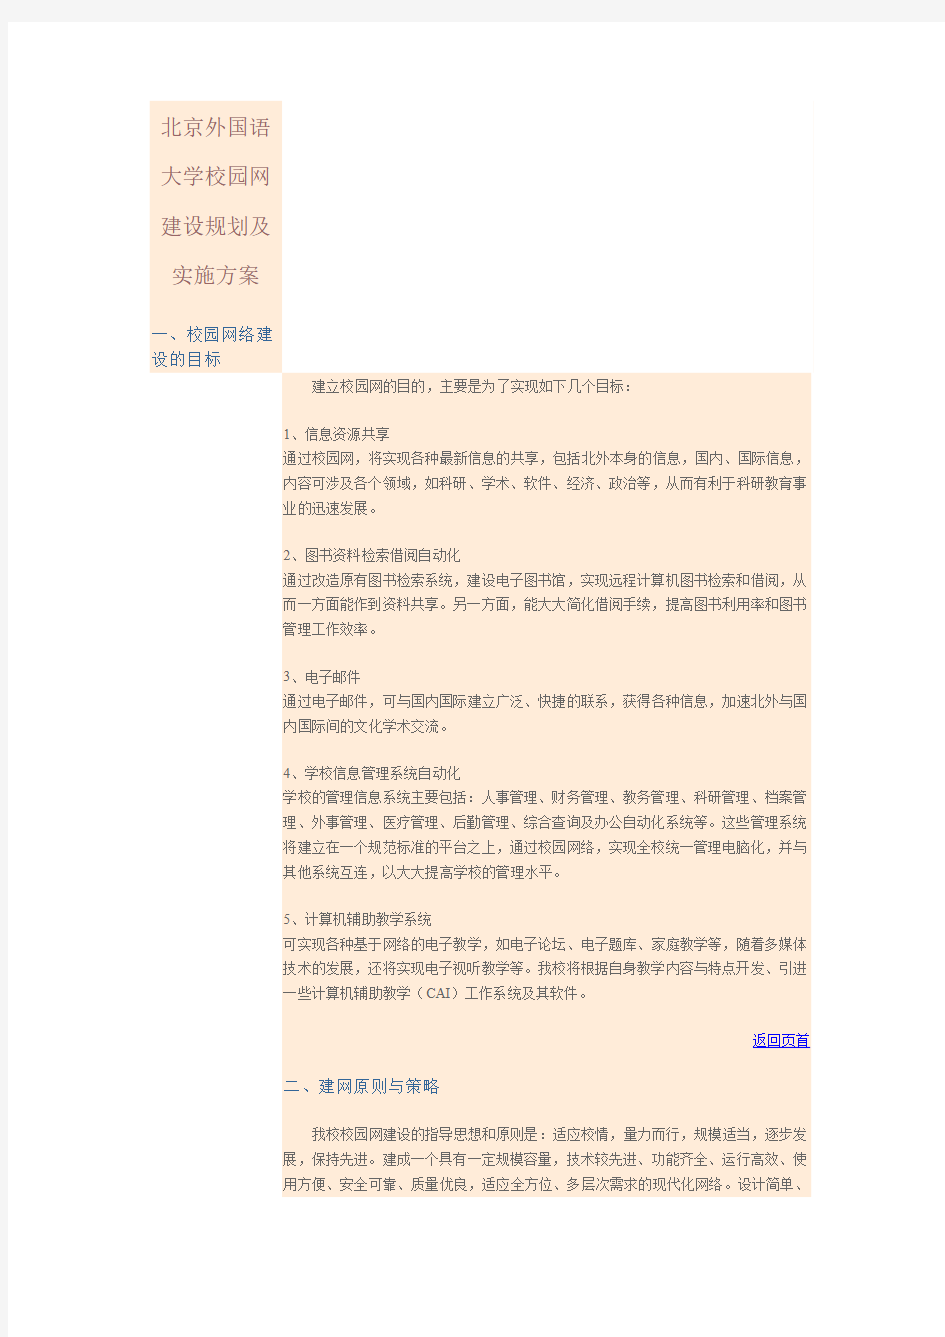 北京外国语大学校园网建设规划及实施方案